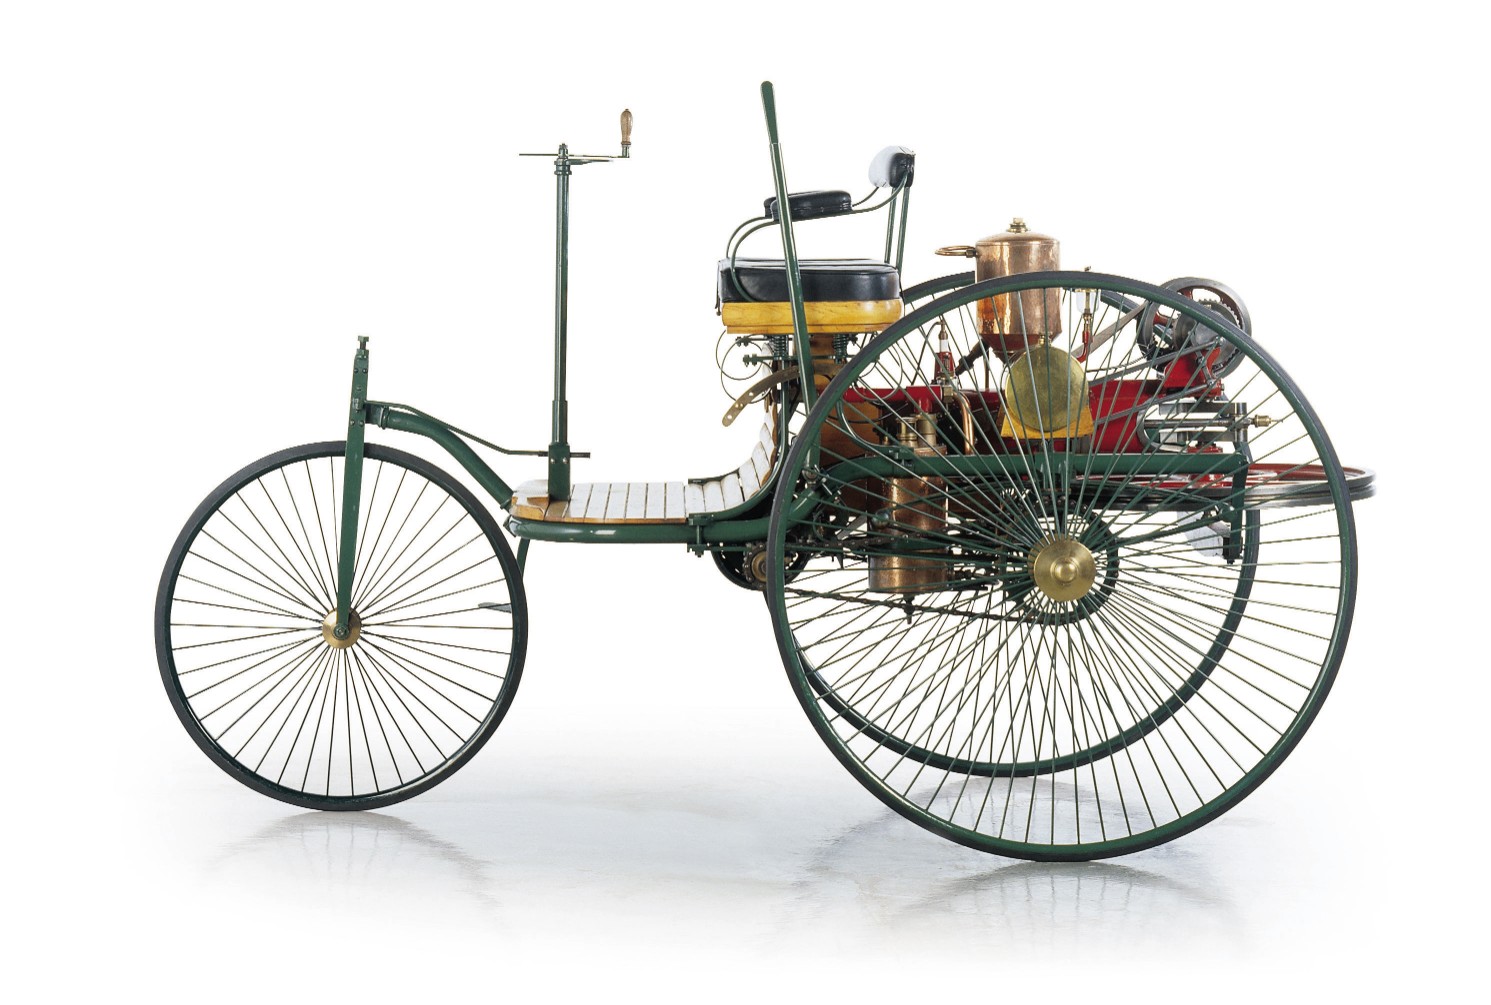 صنعت أول سيارة تعمل بالبنزين عام 1885